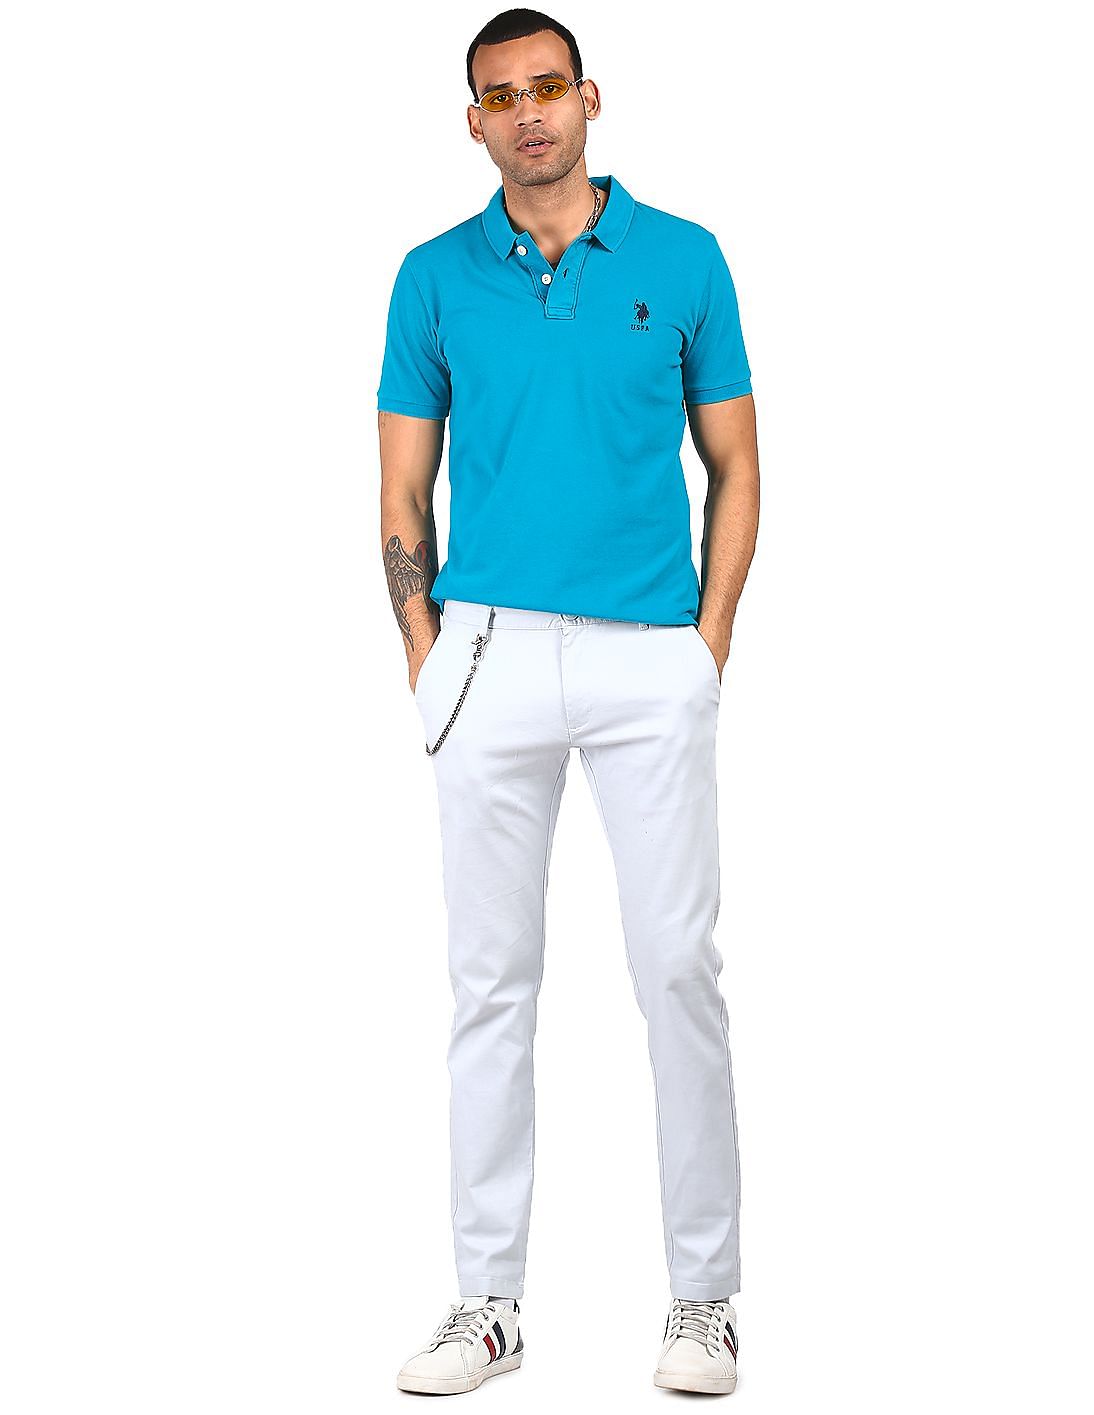 U S POLO ASSN plain rama blue cotton t shirt for men - G3-MTS14973 